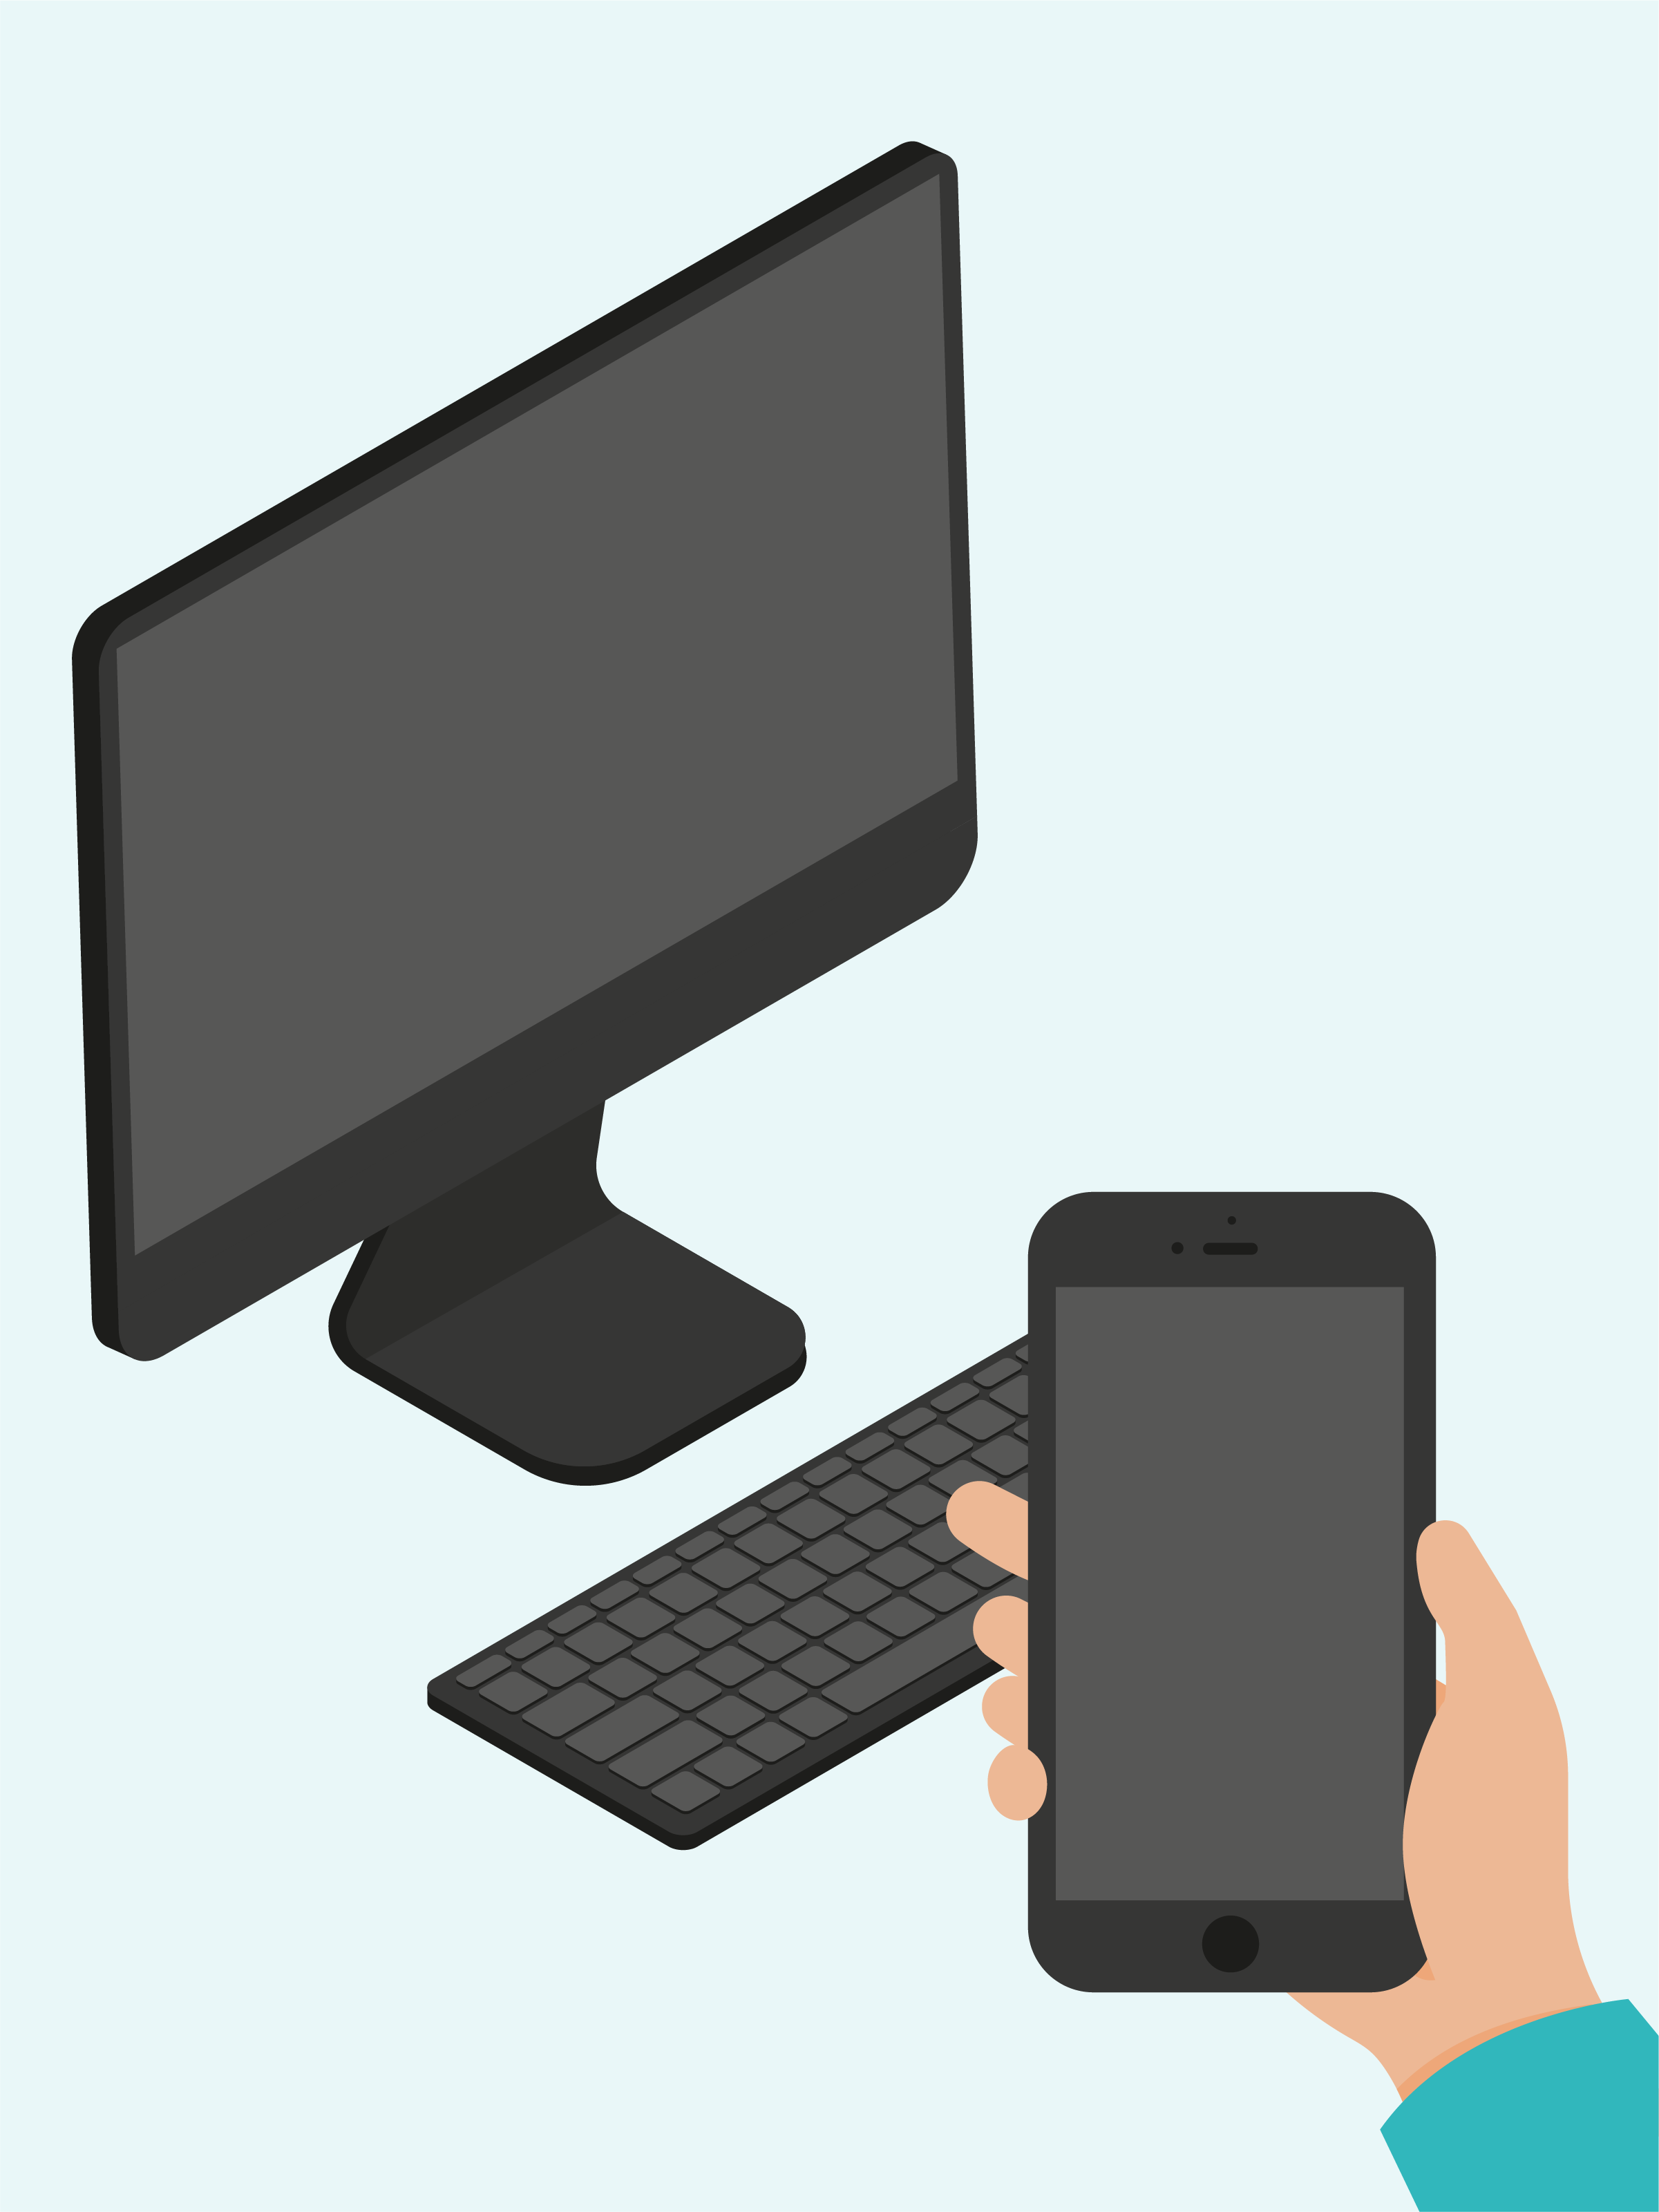 Ein Bild eines Computermonitors und einer Tastatur. Im Vordergrund ist eine Hand zu sehen, die ein Smartphone hält. 